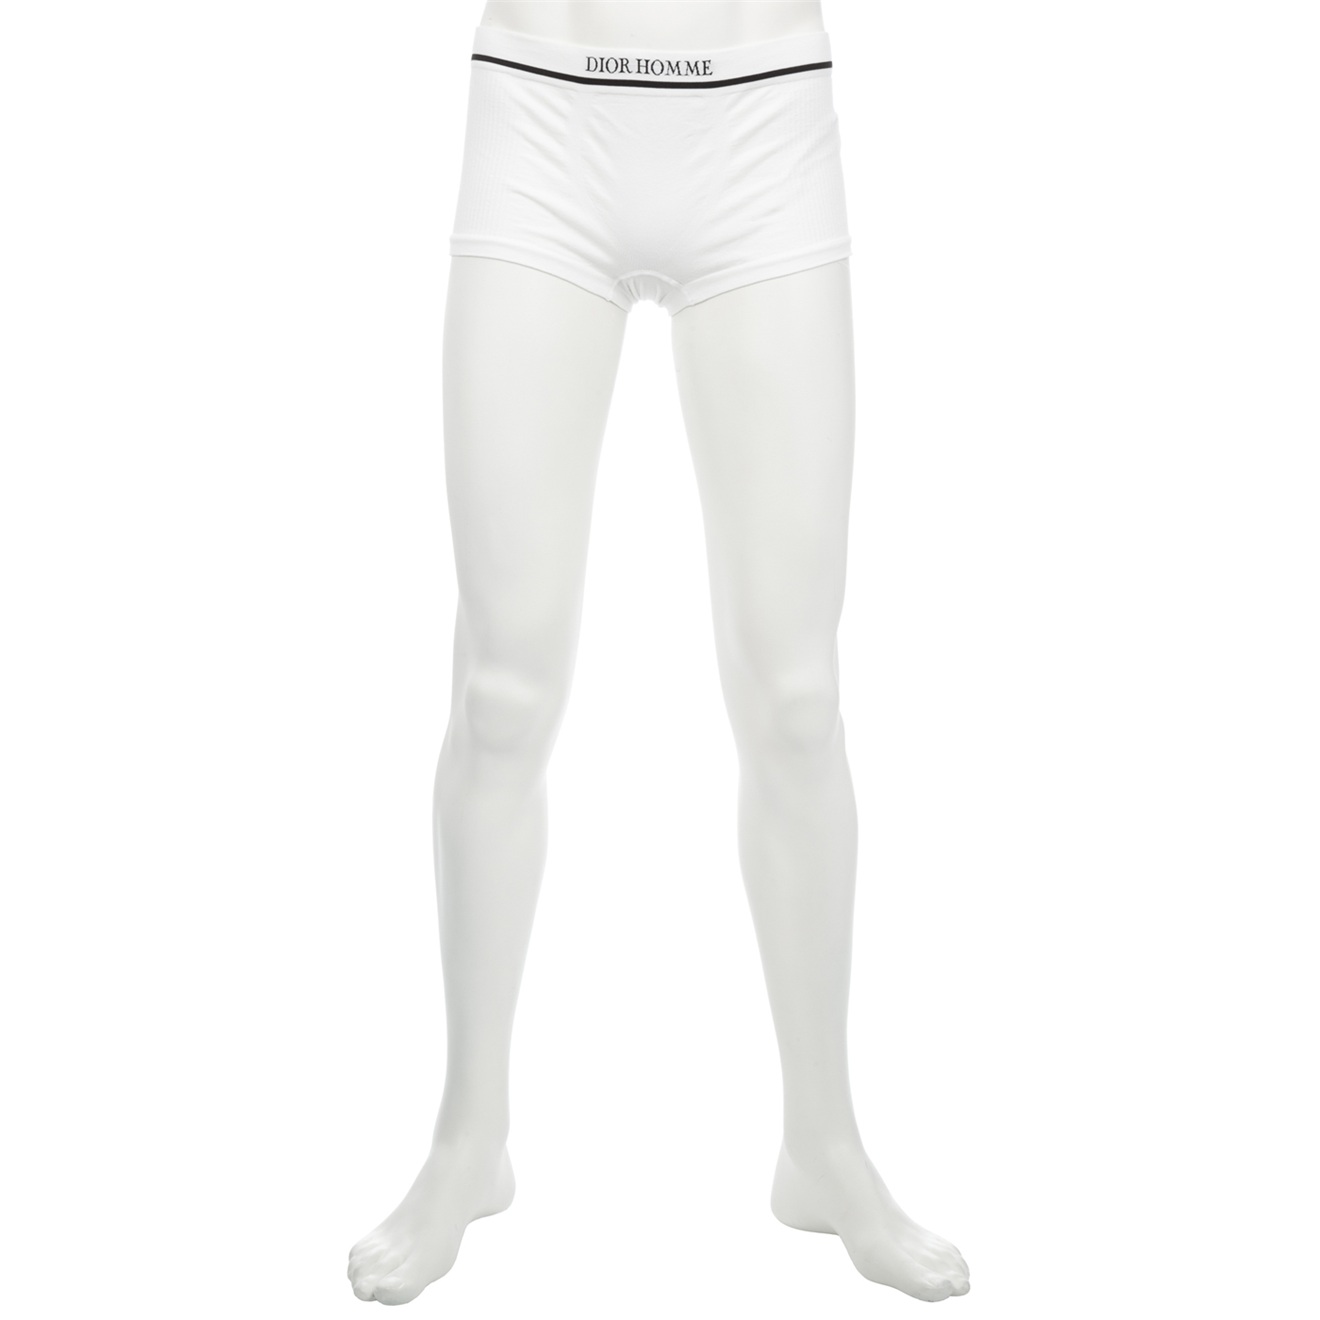 Dior Homme Underwear in White for Men - Lyst